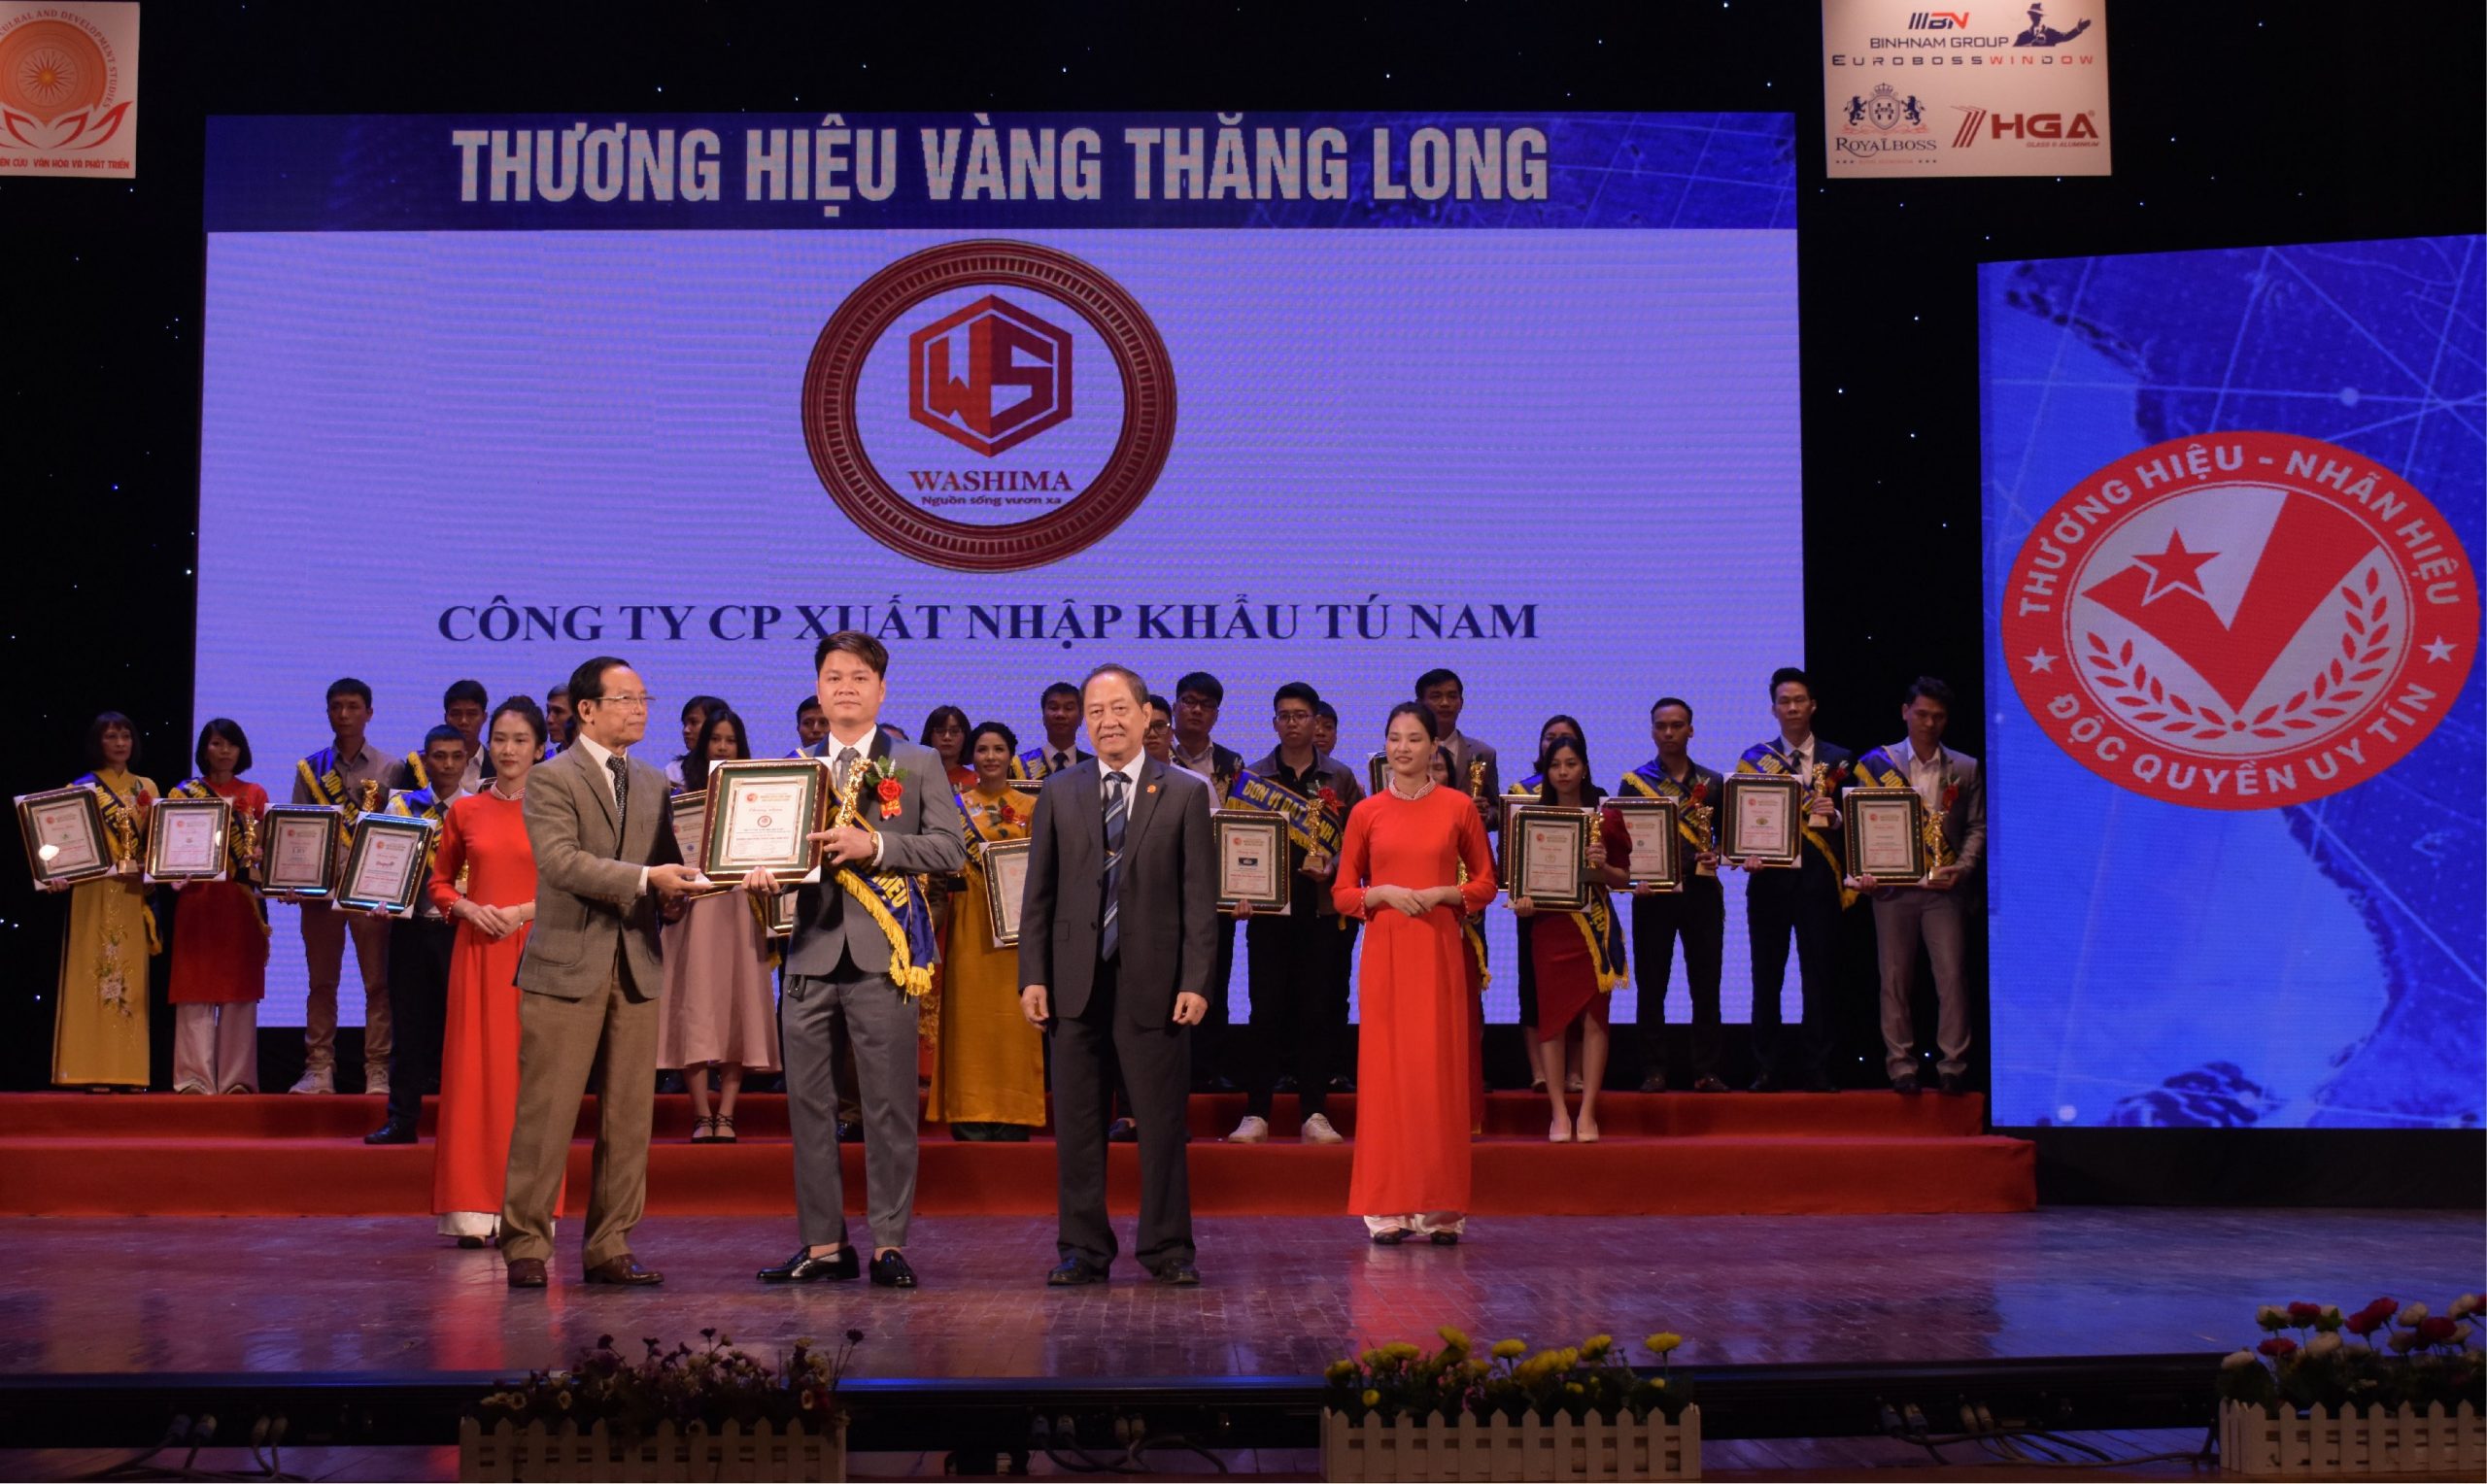 Ghế massage Washima được nhận giải thưởng thương hiệu Vàng Thăng Long